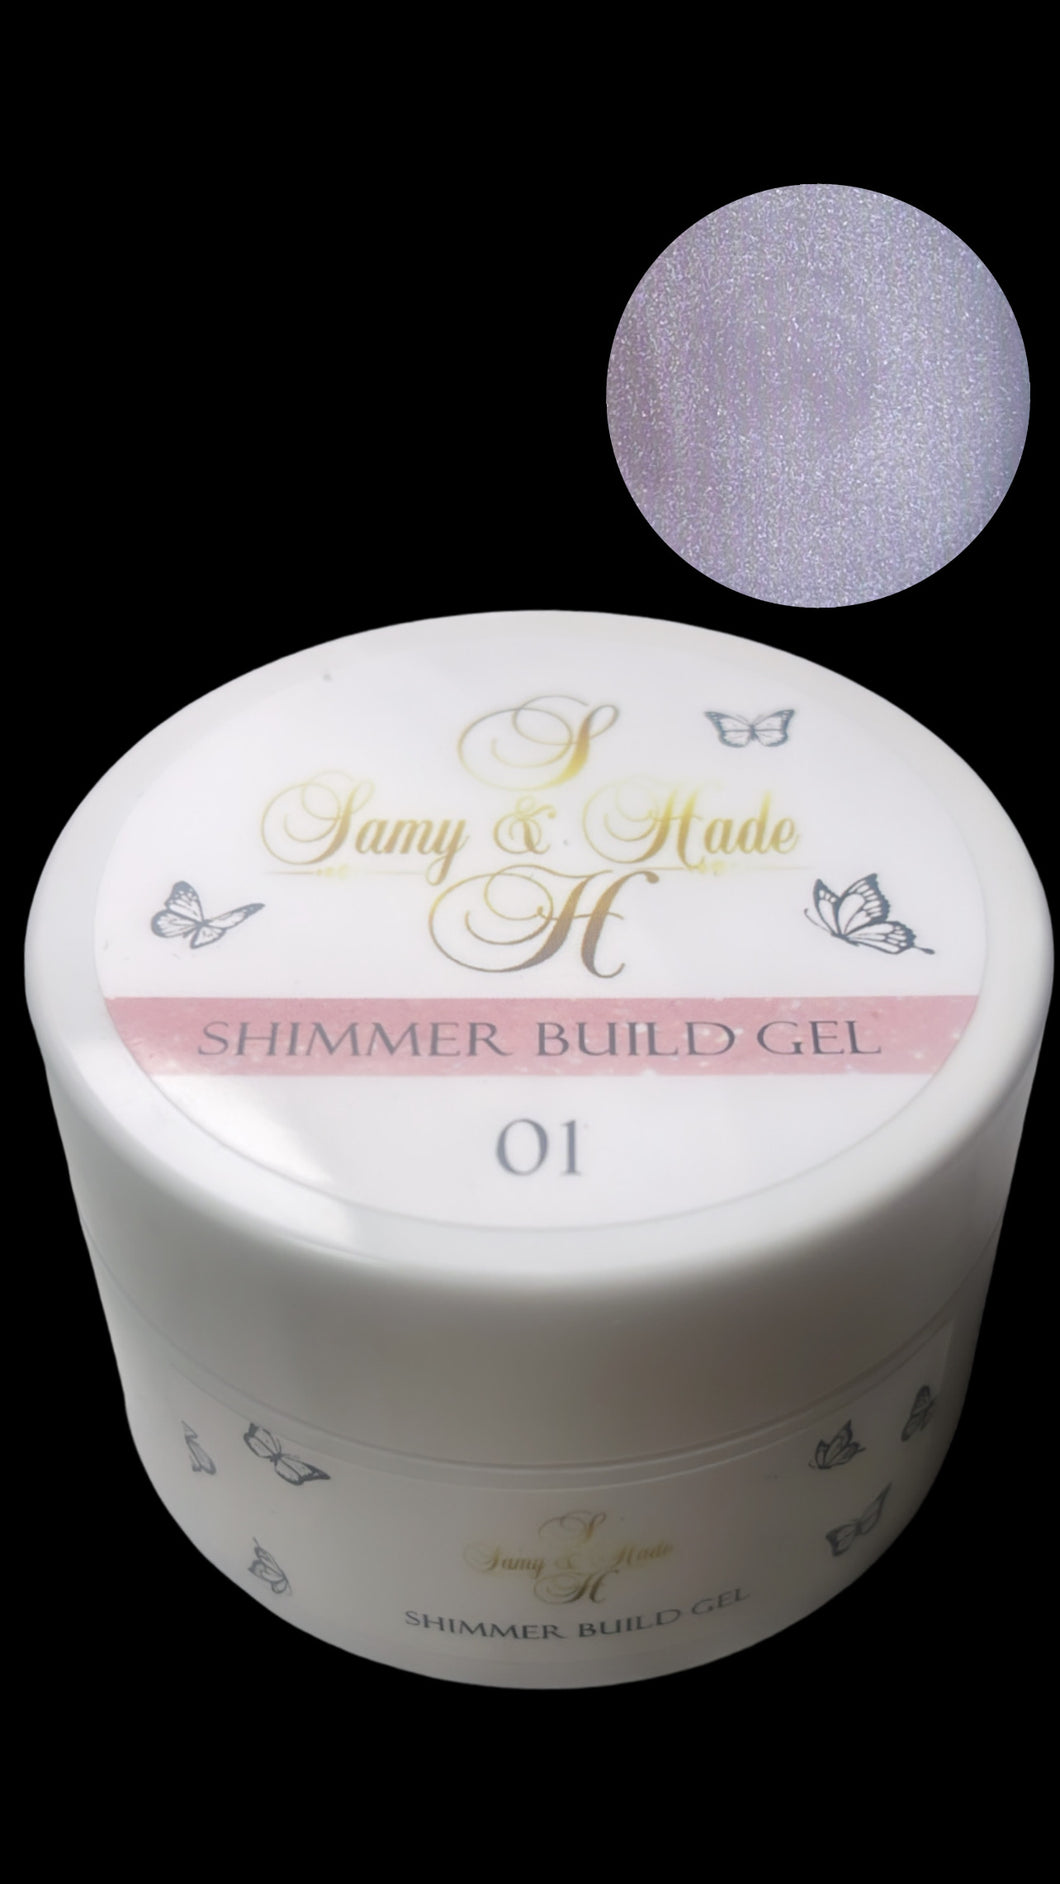 Shimmer build gel #01 60g